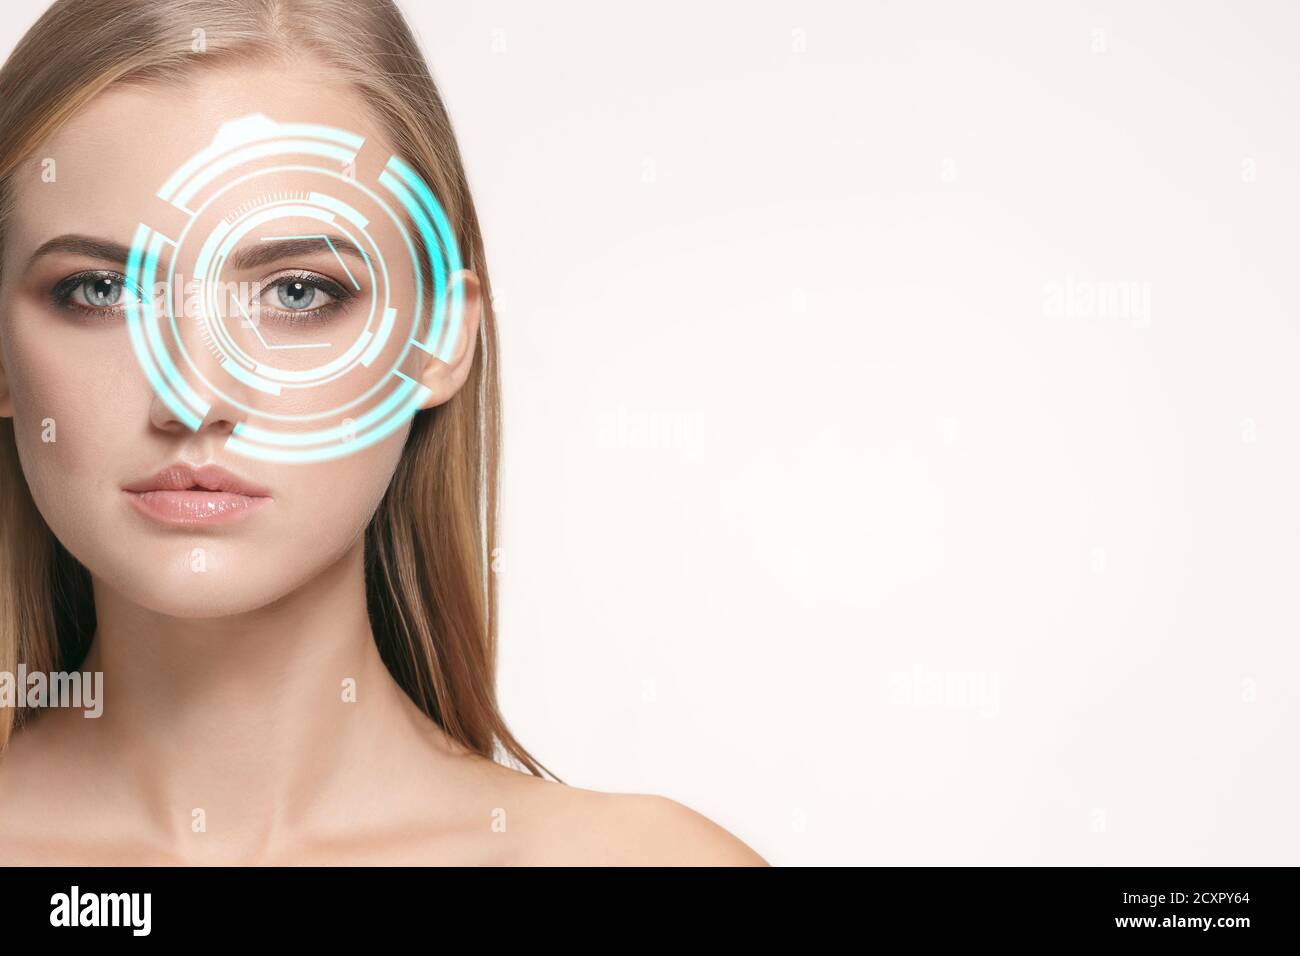 Zukünftige Frau mit Cyber-Technologie Auge Panel, Cyberspace-Schnittstelle, Augenheilkunde Konzept. Schönes weibliches Auge mit moderner Identifikationtech, medizinische Behandlung für Augen, Fokus. Copyspace. Stockfoto